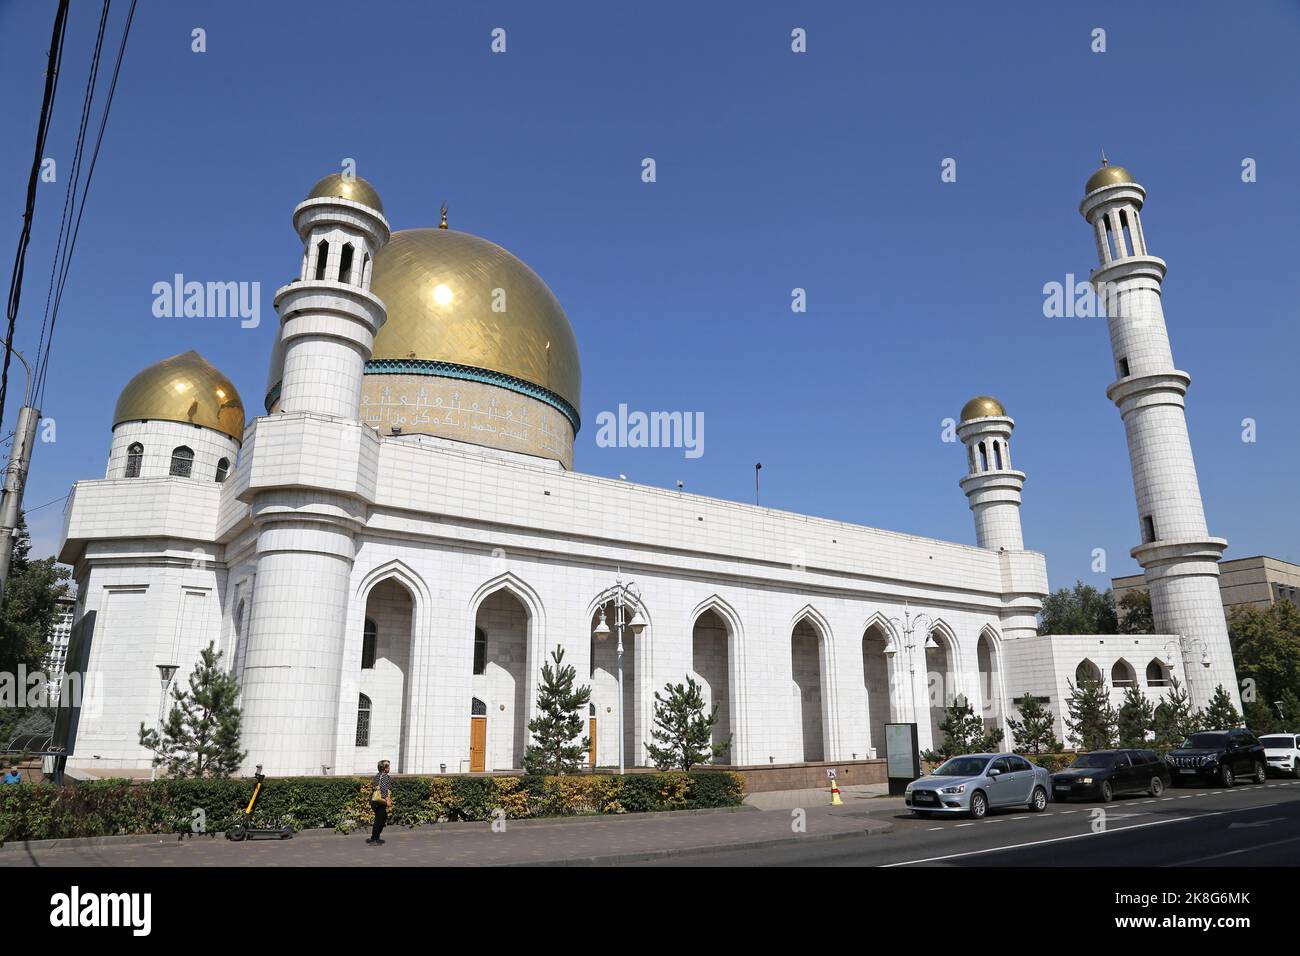 Mosquée centrale, rue Pouchkine, Almaty, région d'Almaty, Kazakhstan, Asie centrale Banque D'Images